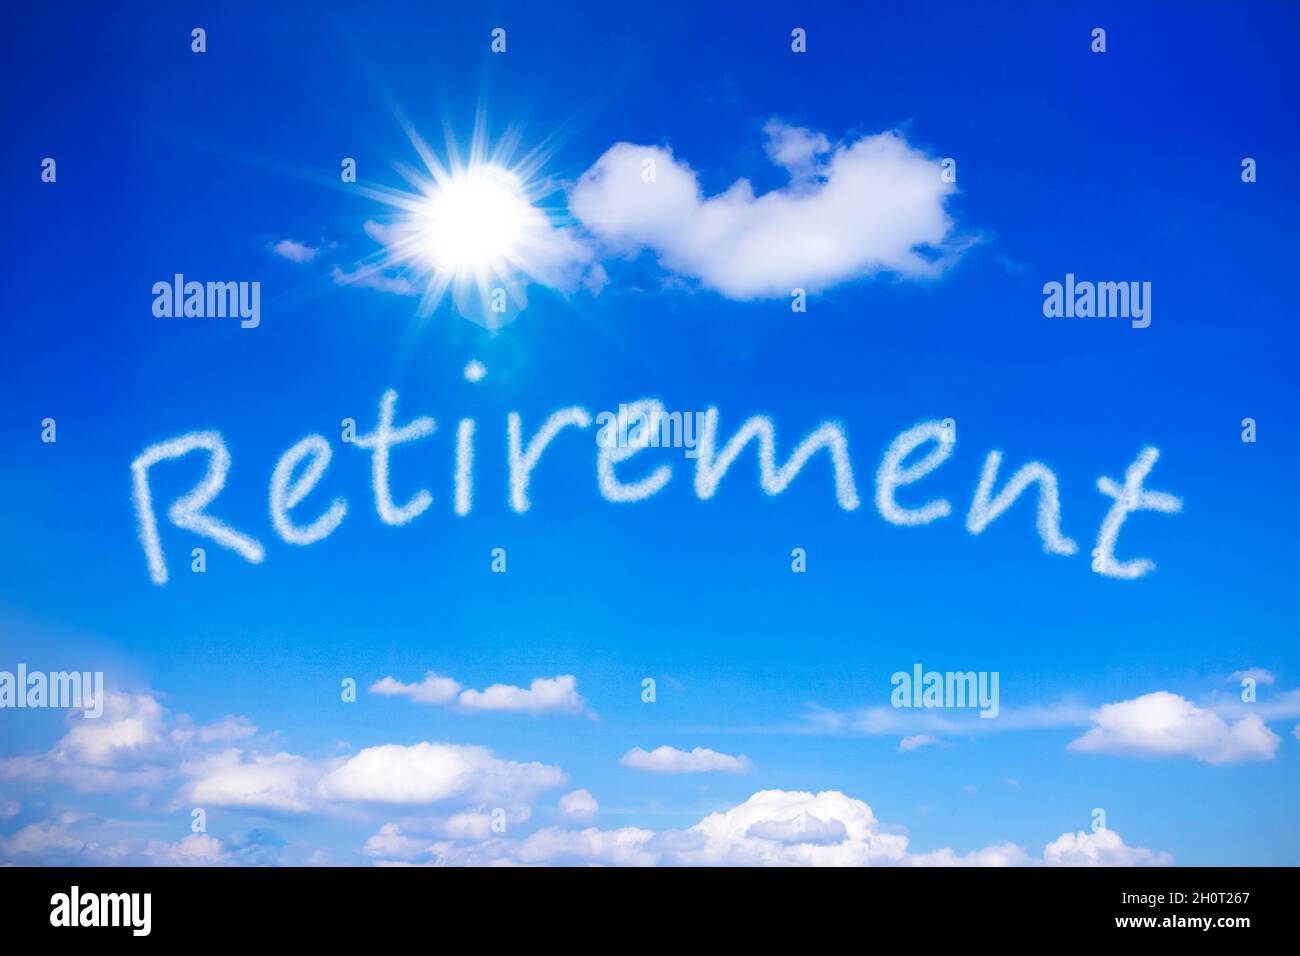 Jubilación Escrito en un cielo azul soleado, símbolo para anticipar la pensión de vejez como una vida sin preocupaciones con interminables vacaciones. Foto de stock